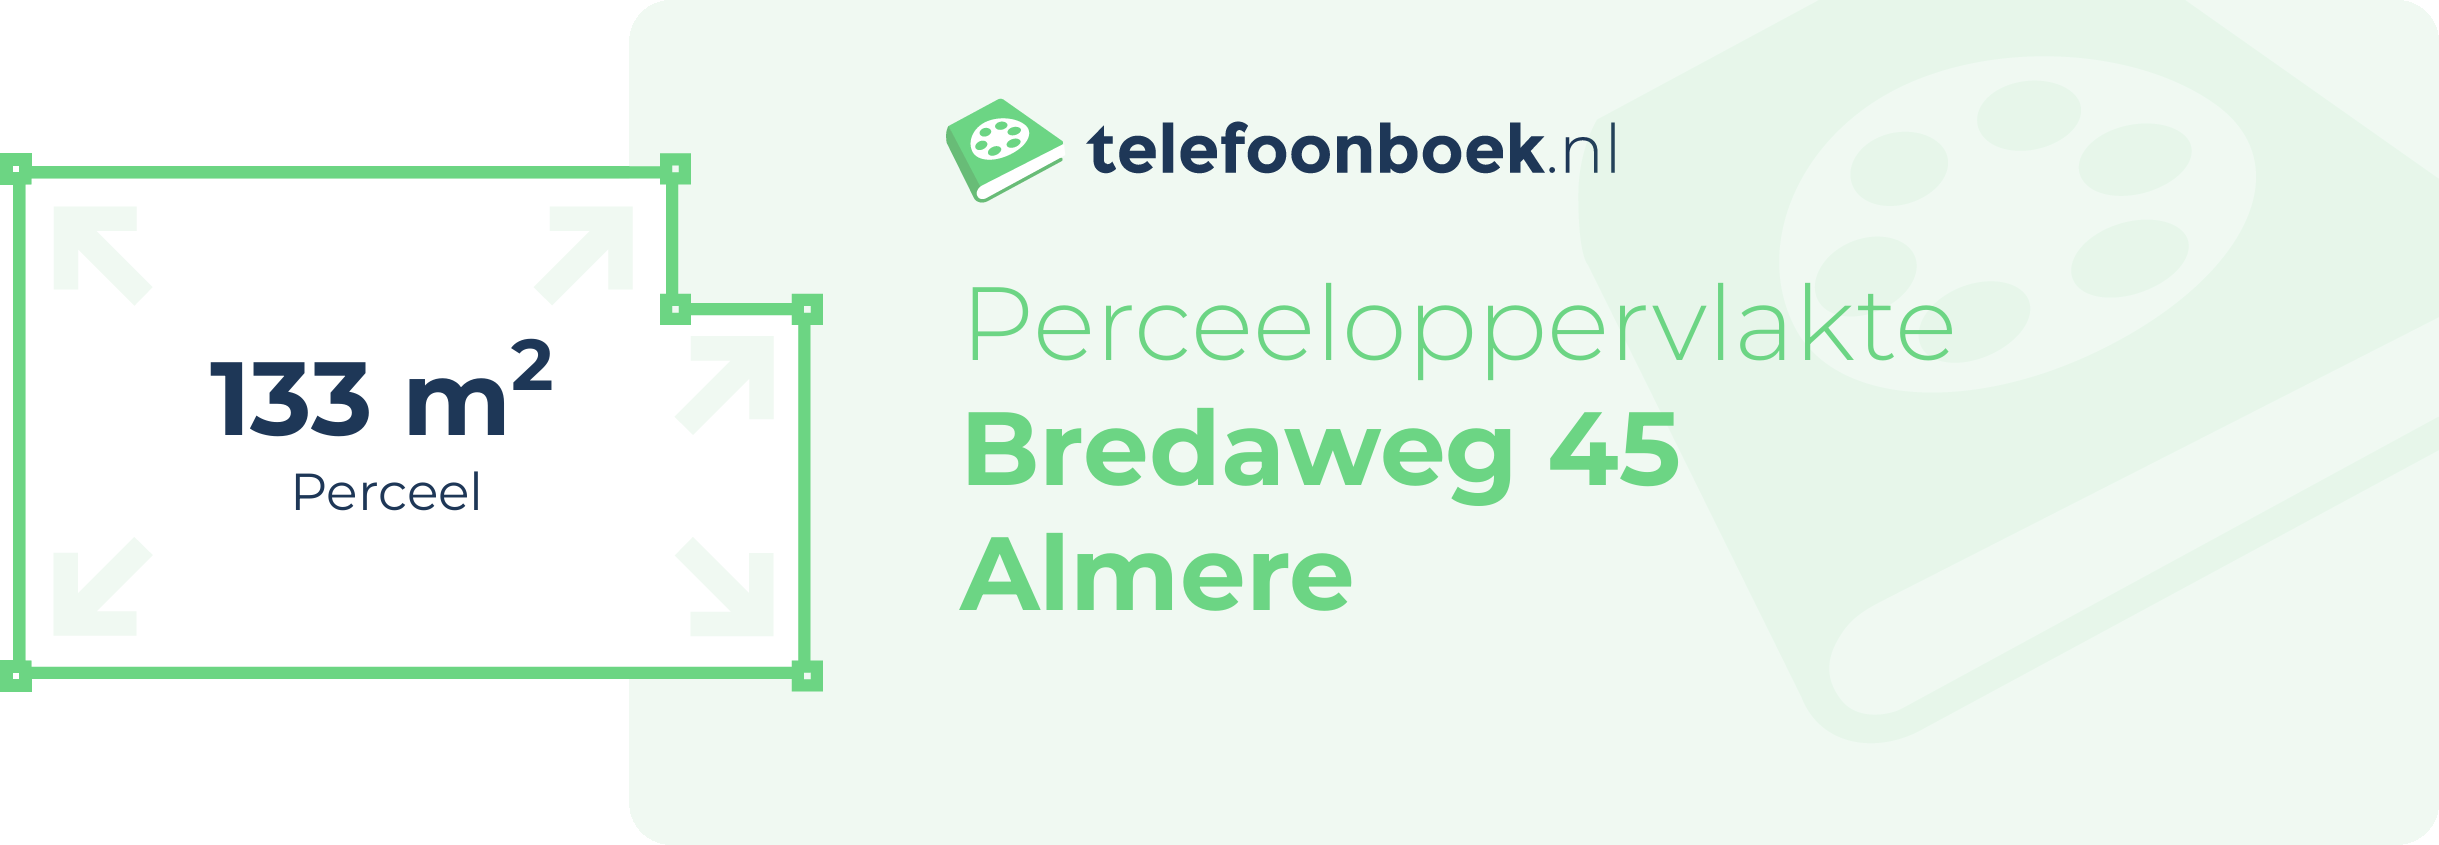 Perceeloppervlakte Bredaweg 45 Almere